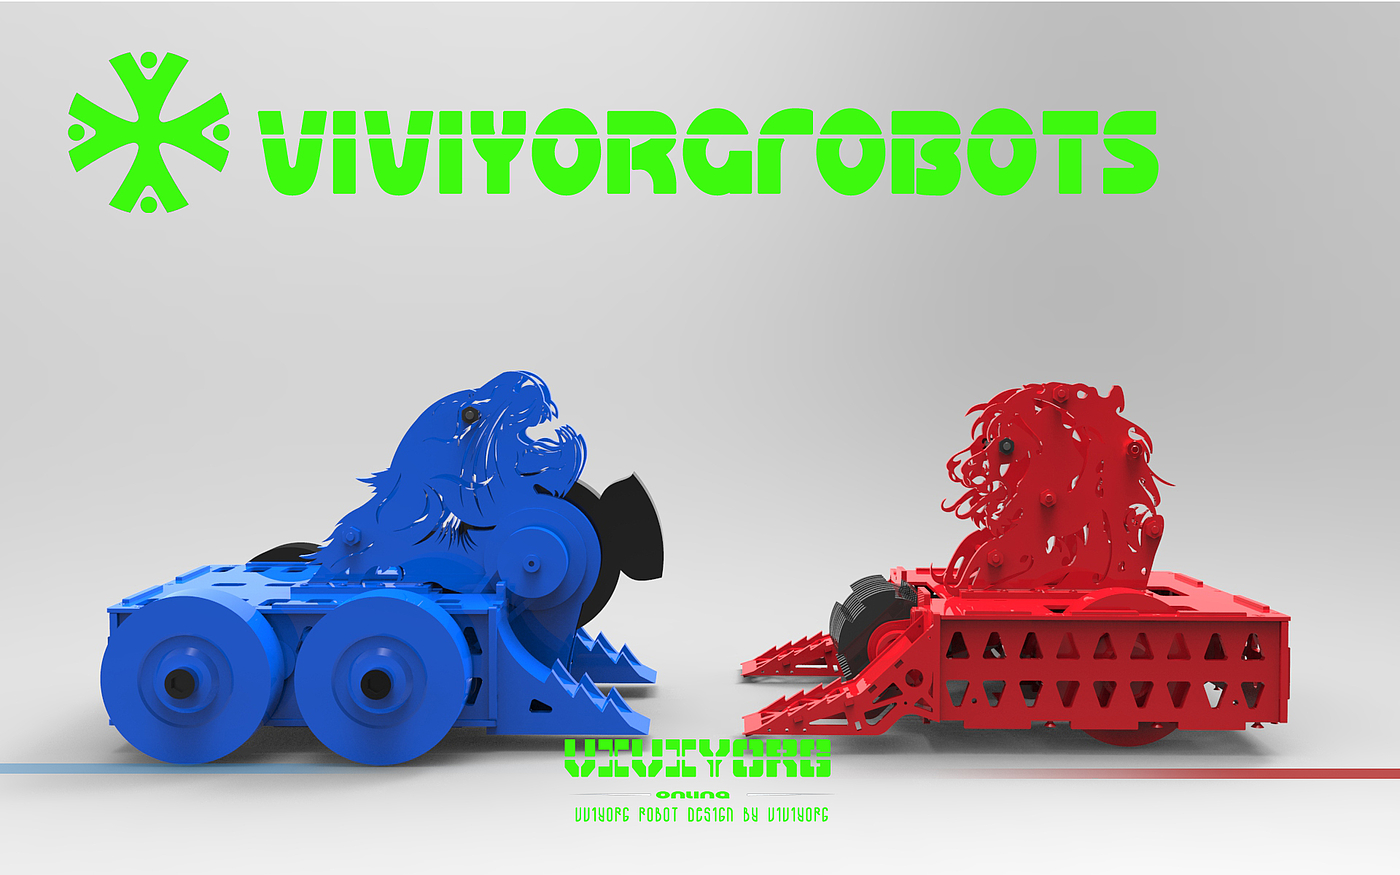 格斗机器人，对战机器人，AGV赛车，Robot Wars，RobotGames，BattleBots，RoboMasters，